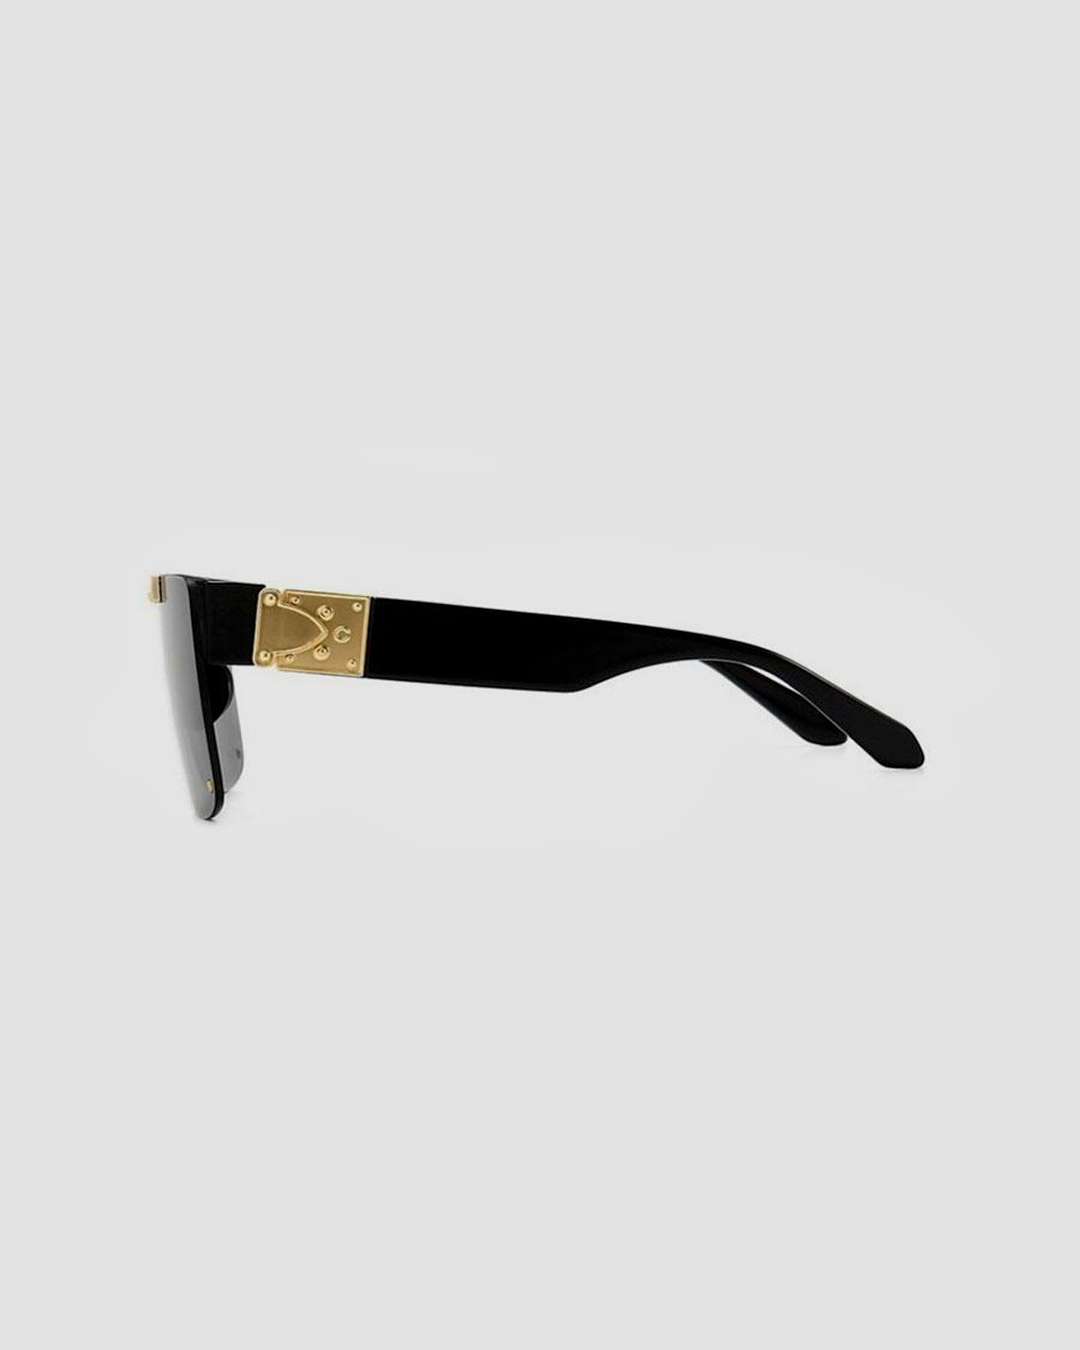 Persia Sunglasses